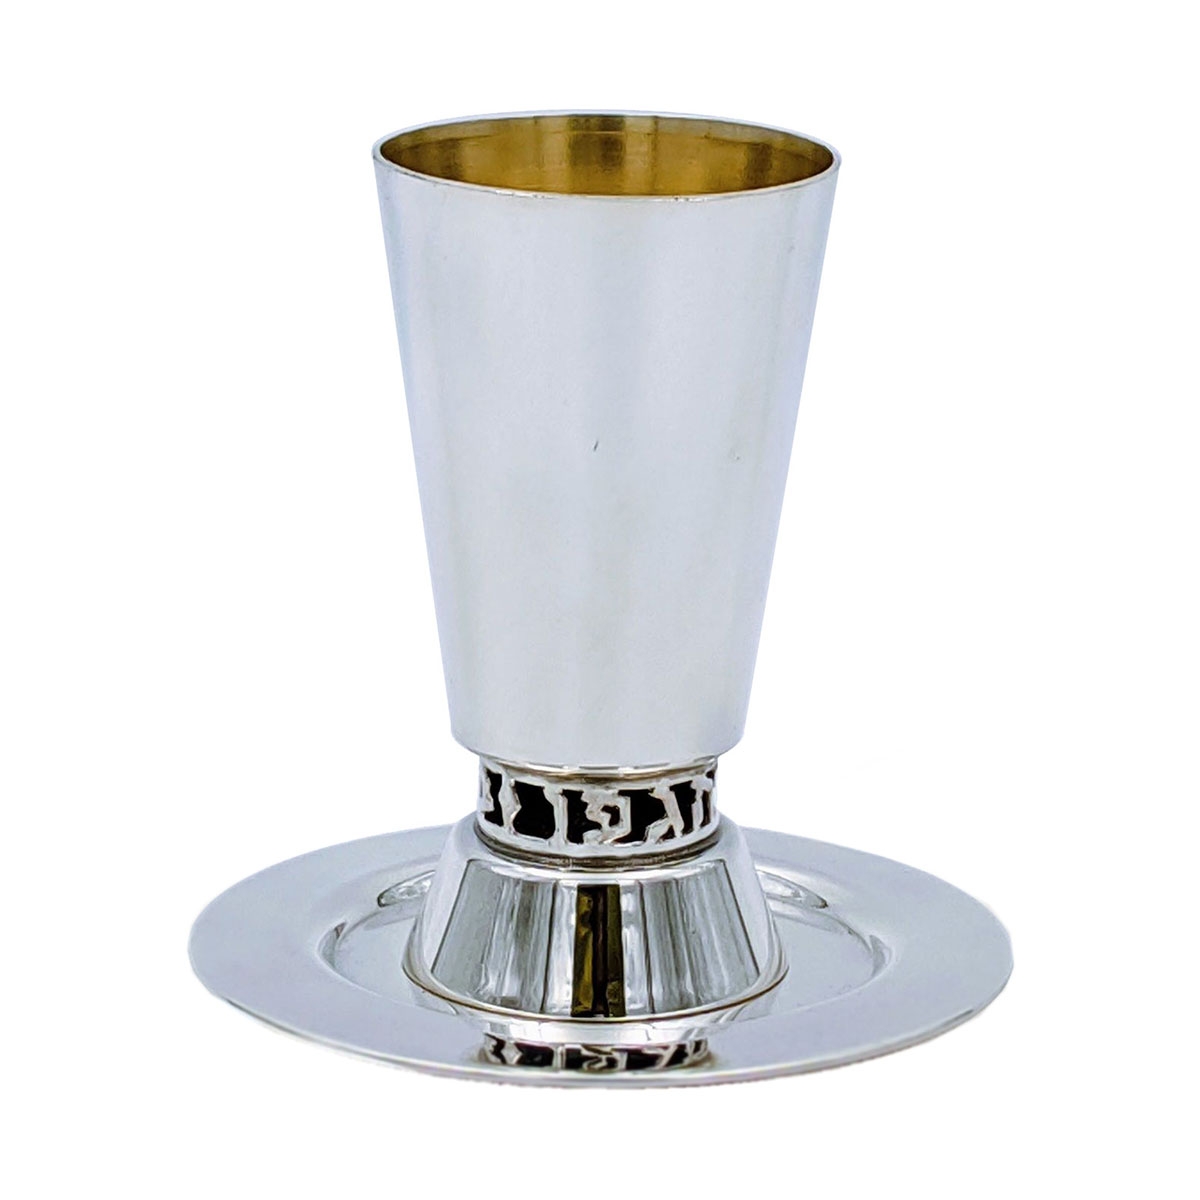 Bier Judaica Handcrafted 925 Sterling Silver Kiddush Cup With "Borei Peri Hagefen" Design - 1